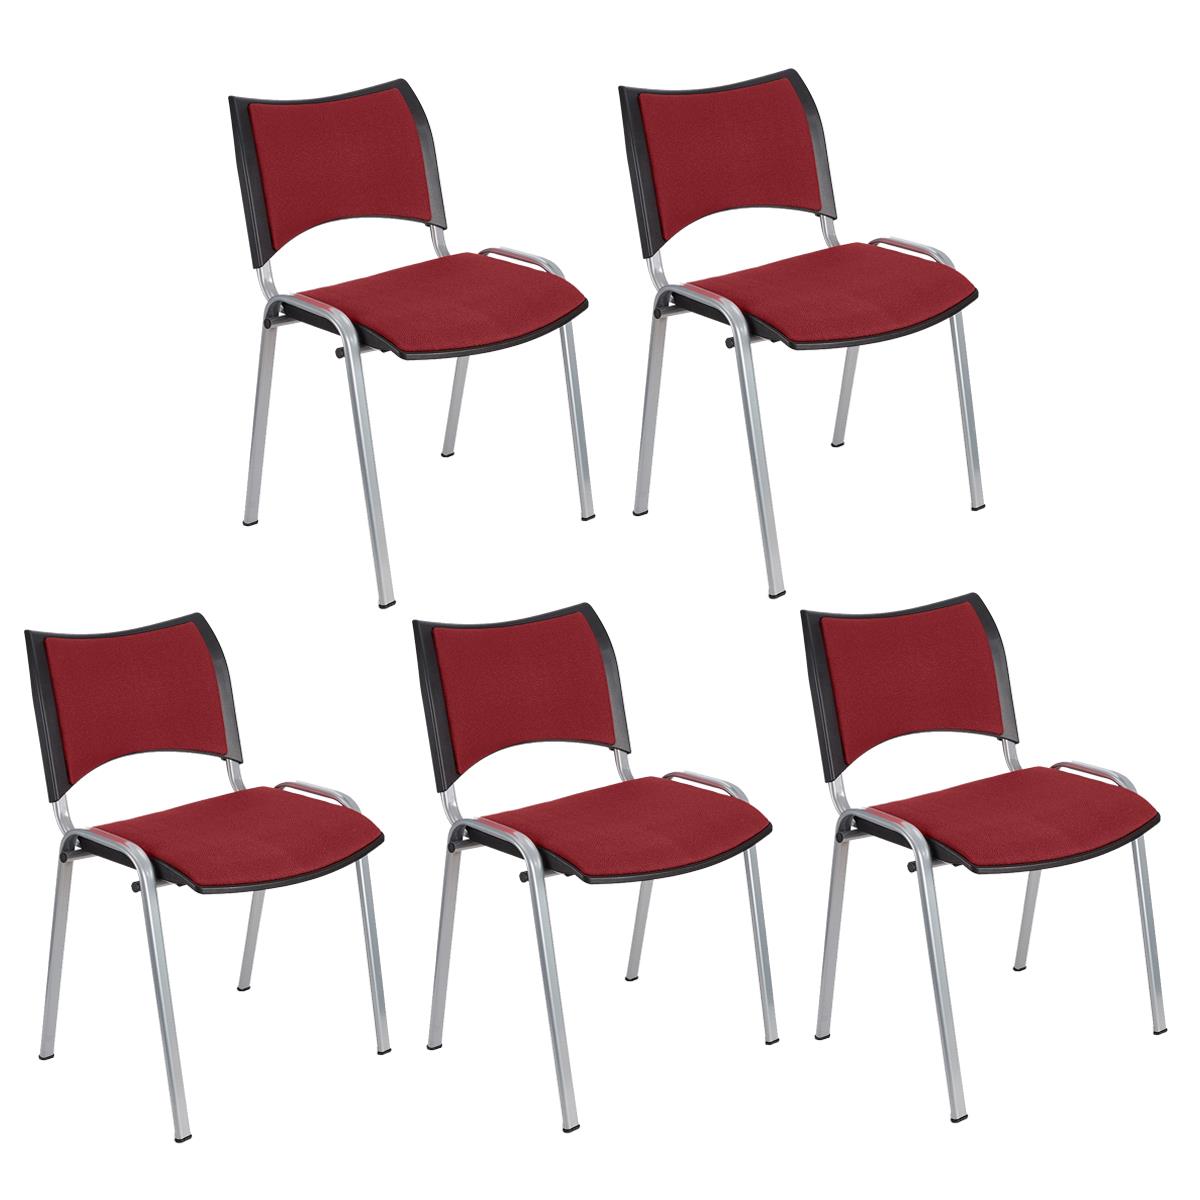 Lote 5 Cadeiras de Visita ROMEL, Prática e Empilhável, Pernas Cinza, Em Pano, Bordeaux